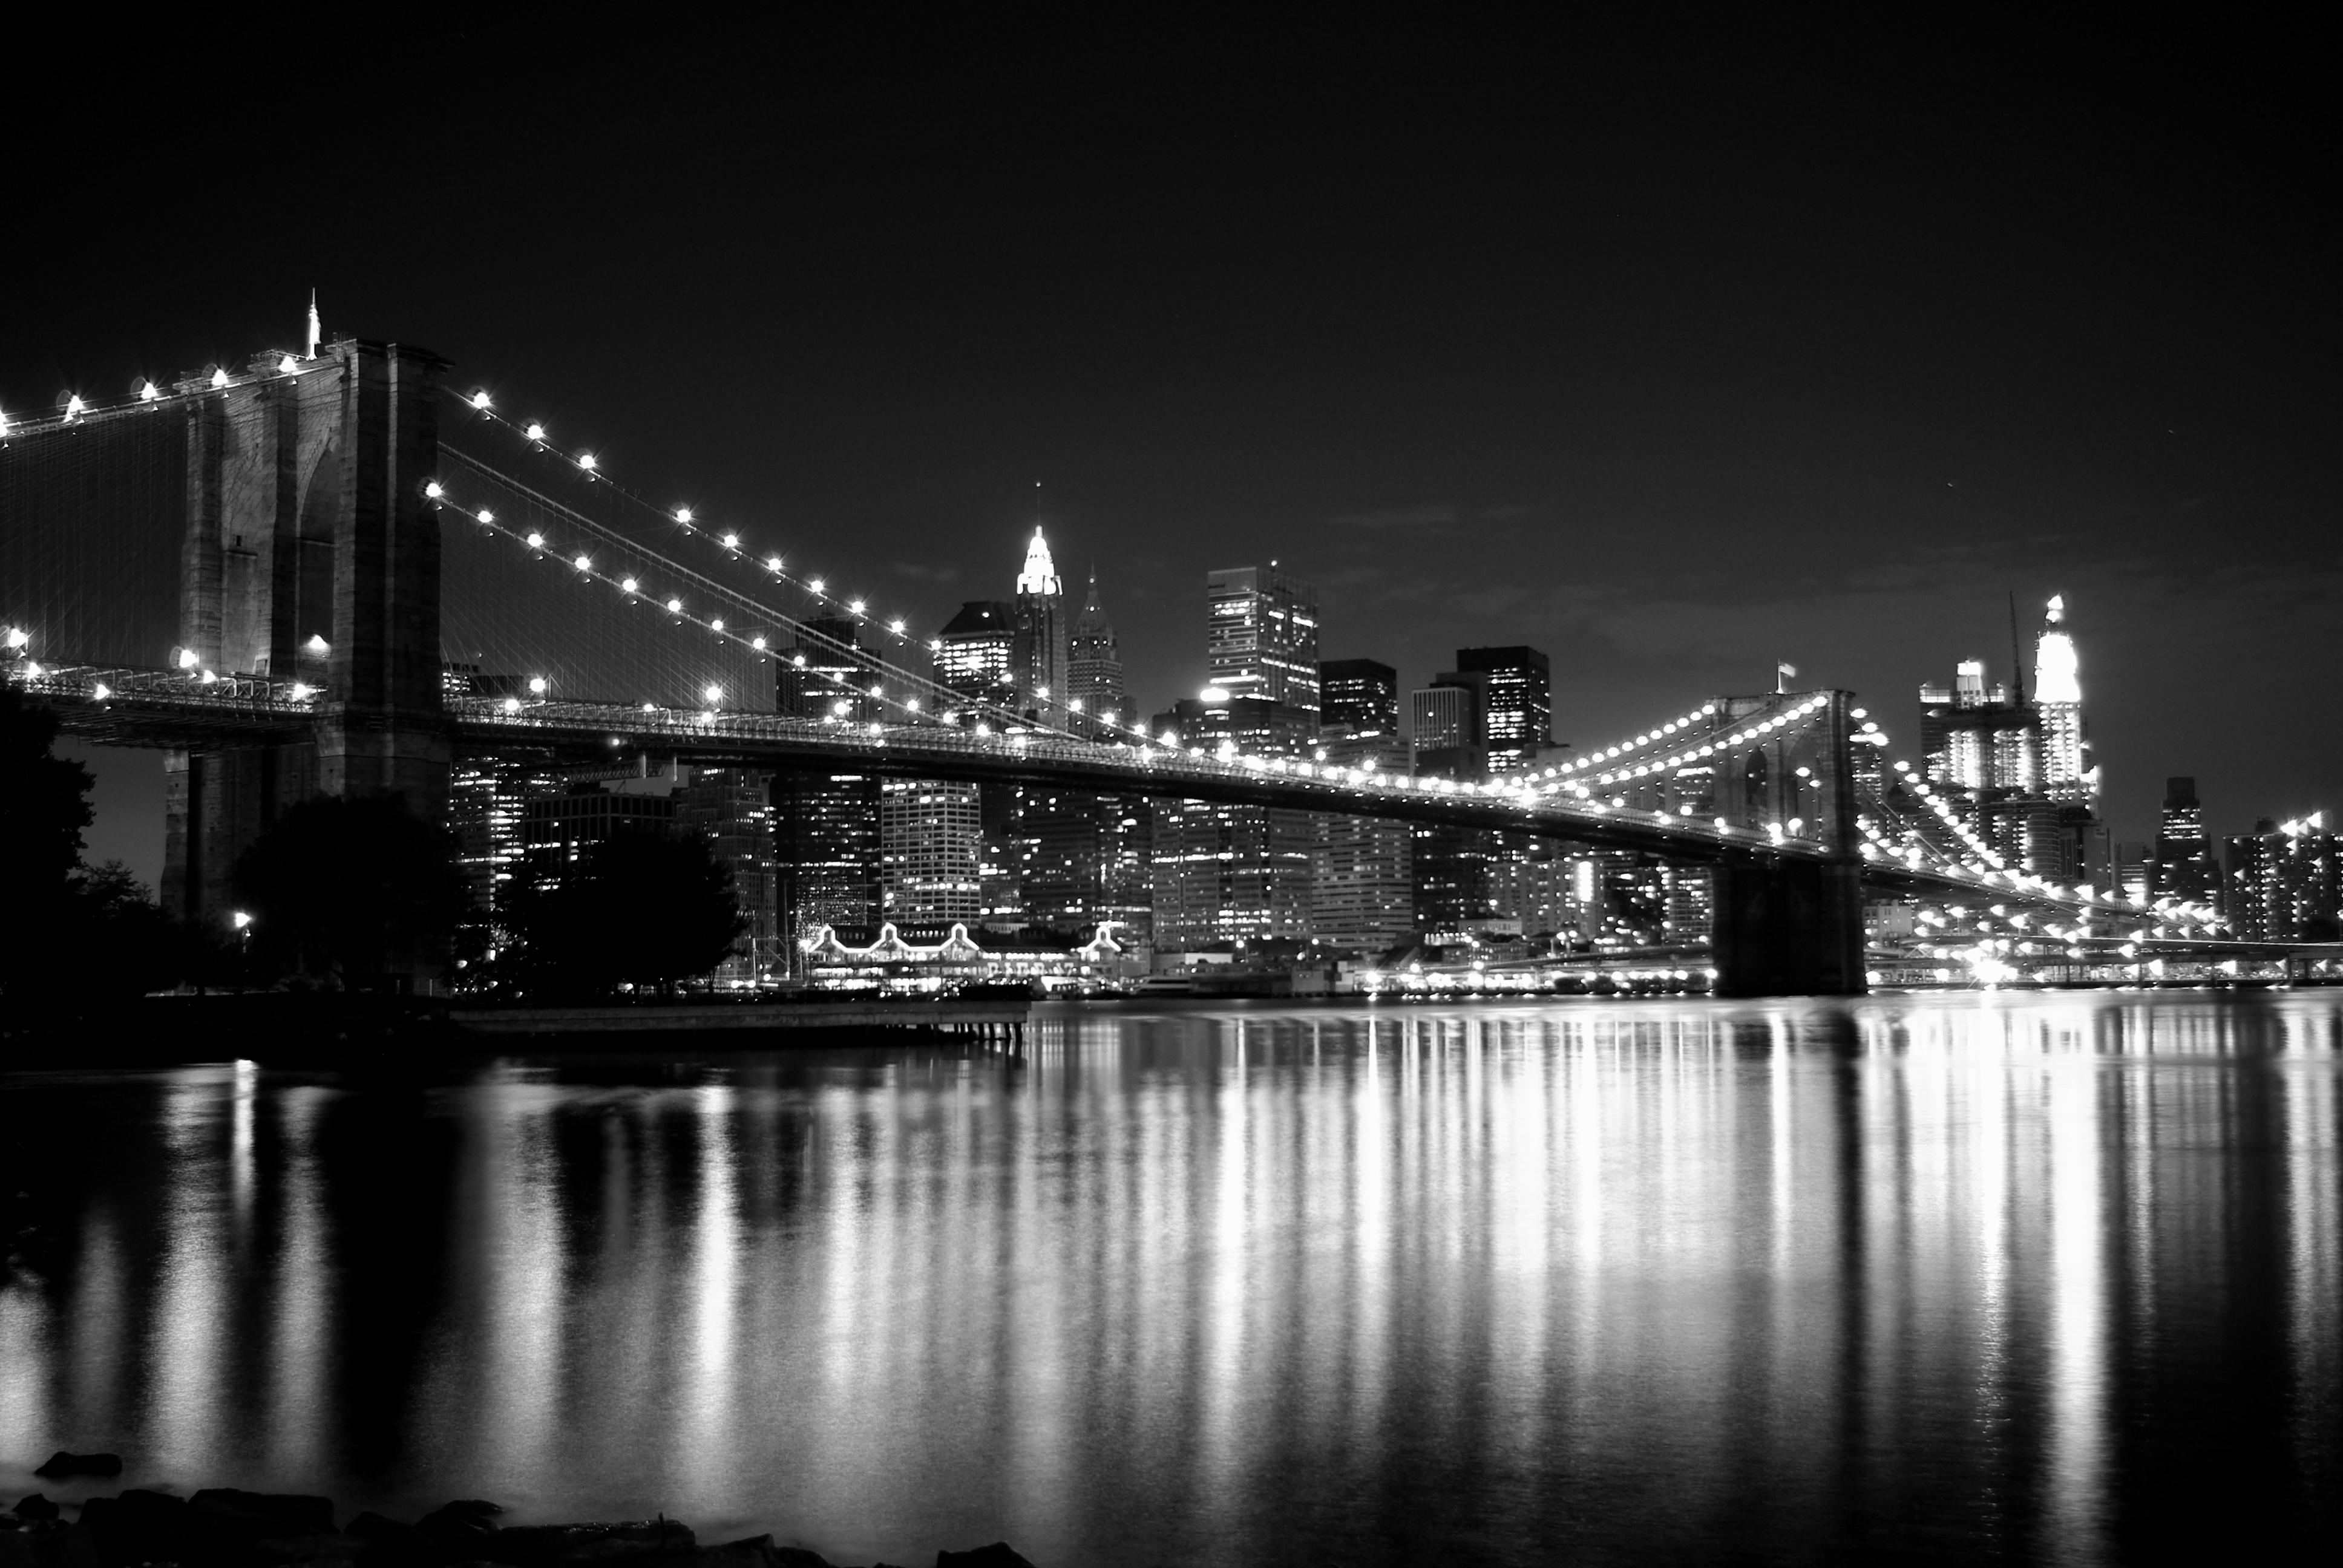 ブルックリン橋の壁紙,都市の景観,市,夜,スカイライン,ブリッジ